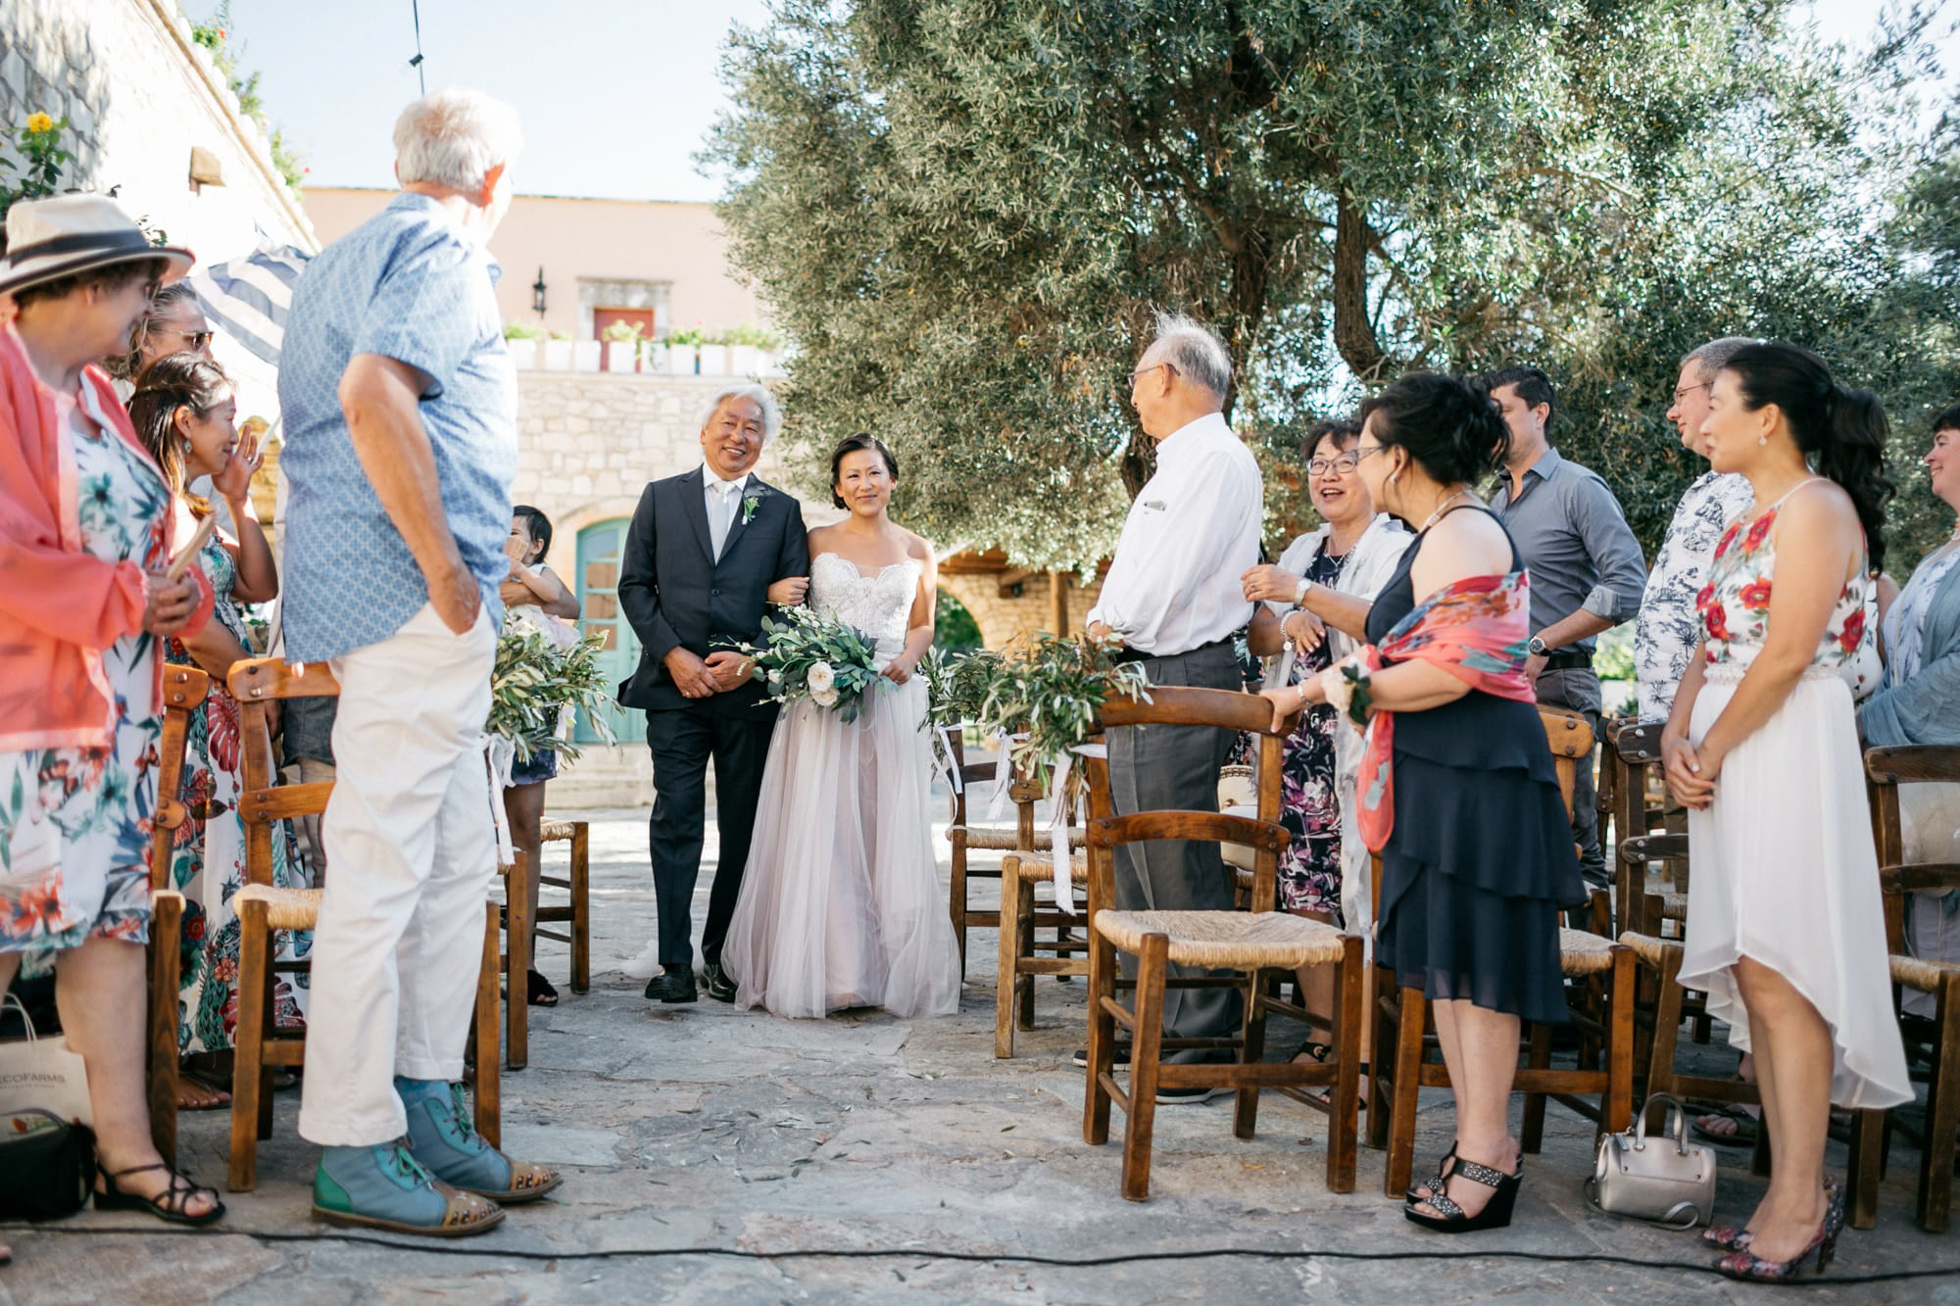 Destination wedding ceremony in Agreco Farms, Grecotel, Crete, Greece.